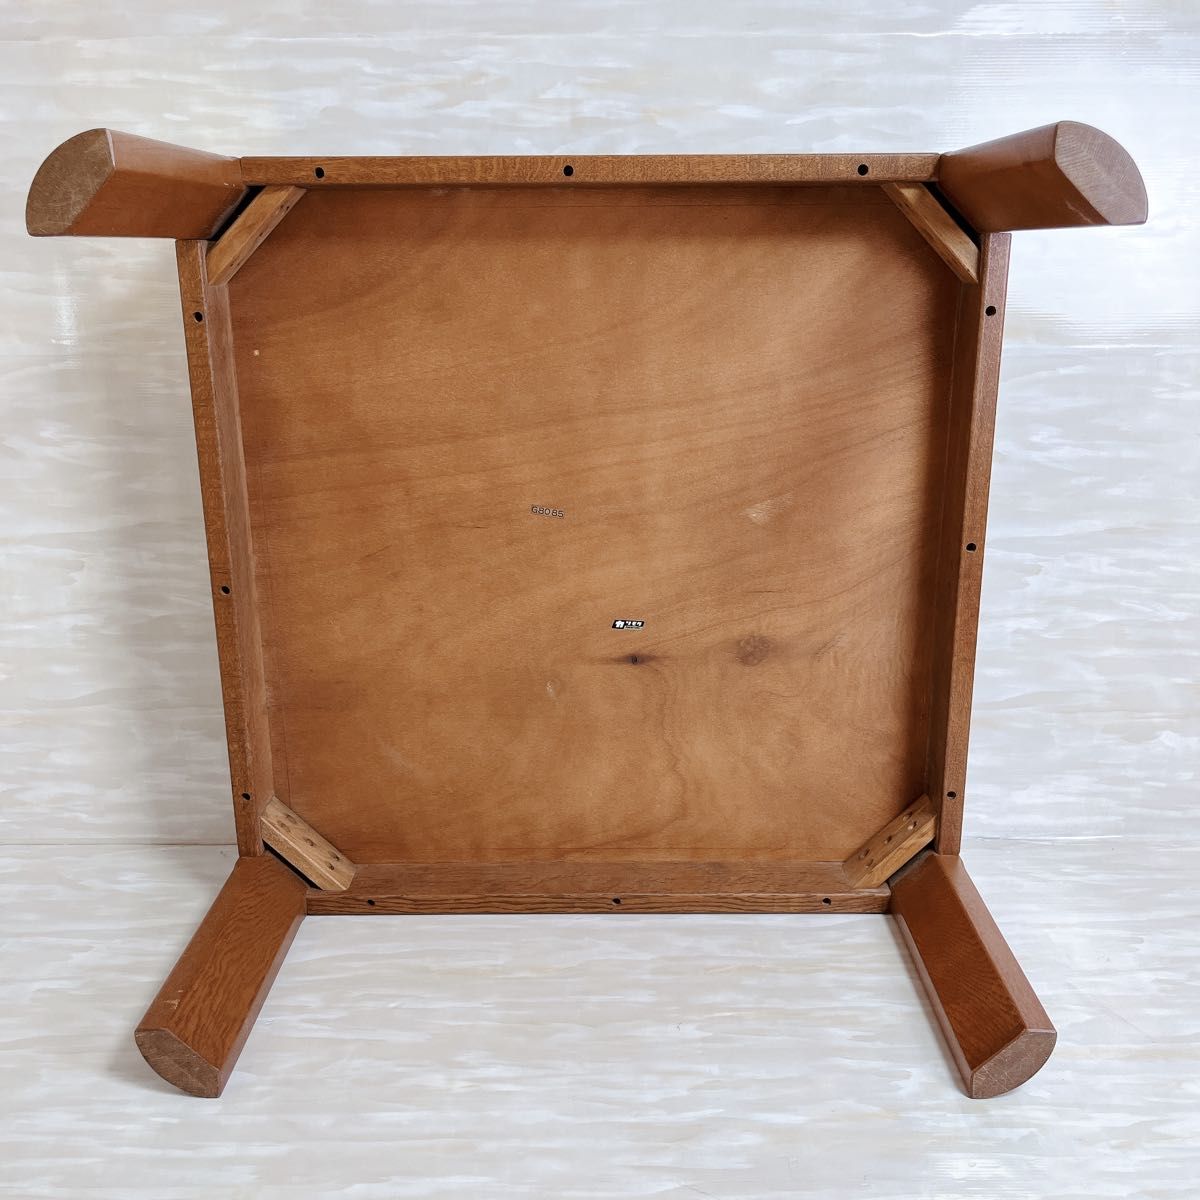 カリモク karimoku 木製 ローテーブル 座卓 正方形